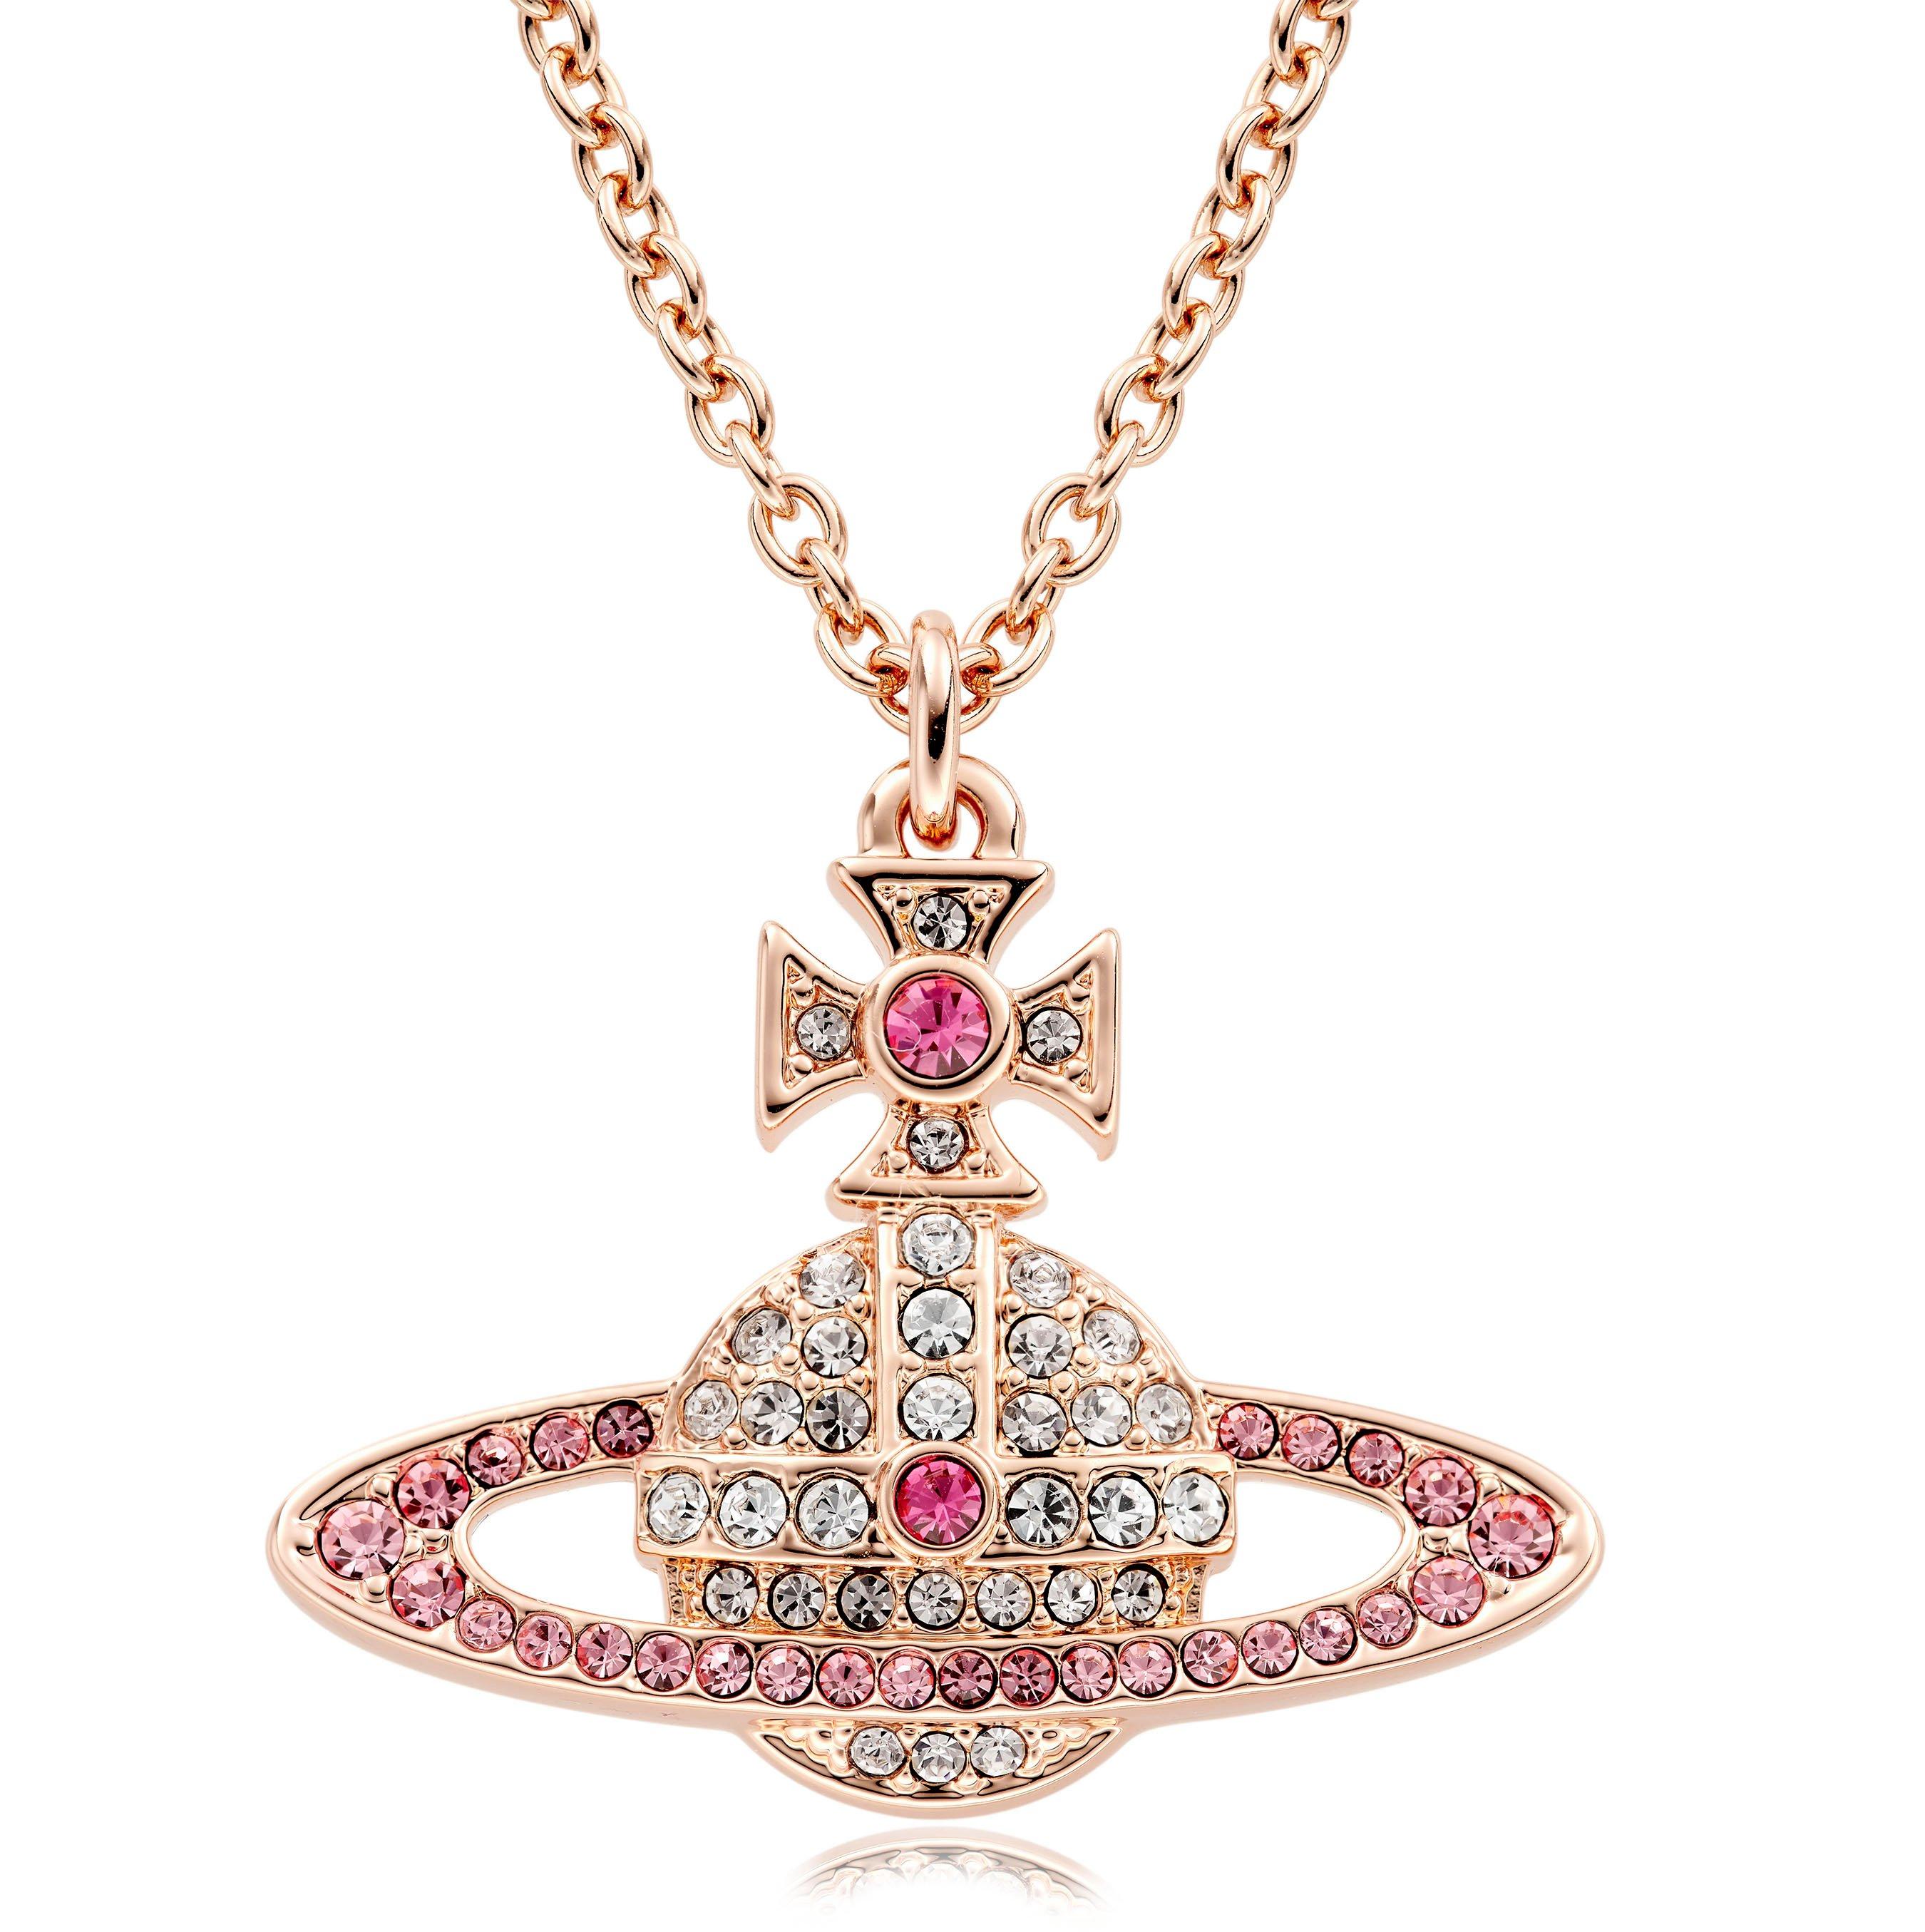 Vivienne Westwood Kika Pink Pendant | 0130013 | Beaverbrooks the Jewellers